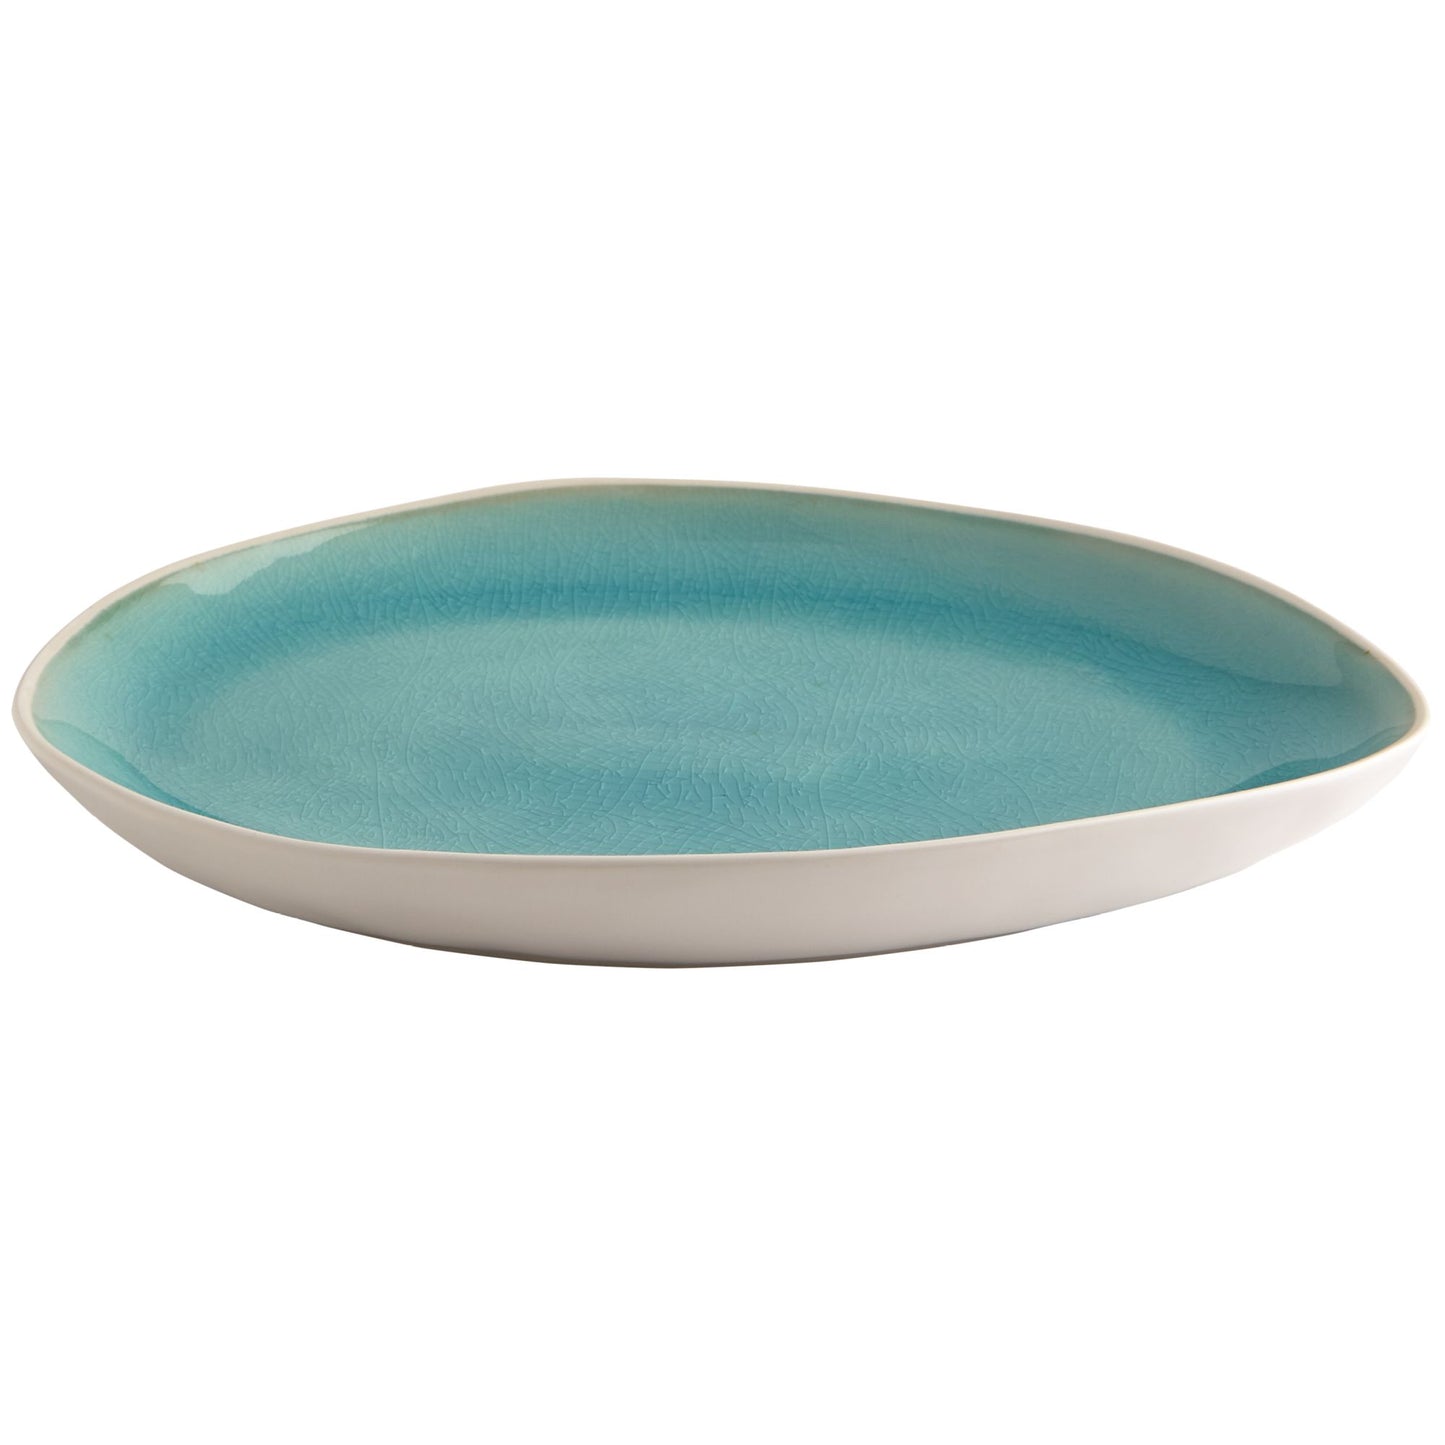 Fairmont & Main Medium Plate - Vie Naturelle Turquoise